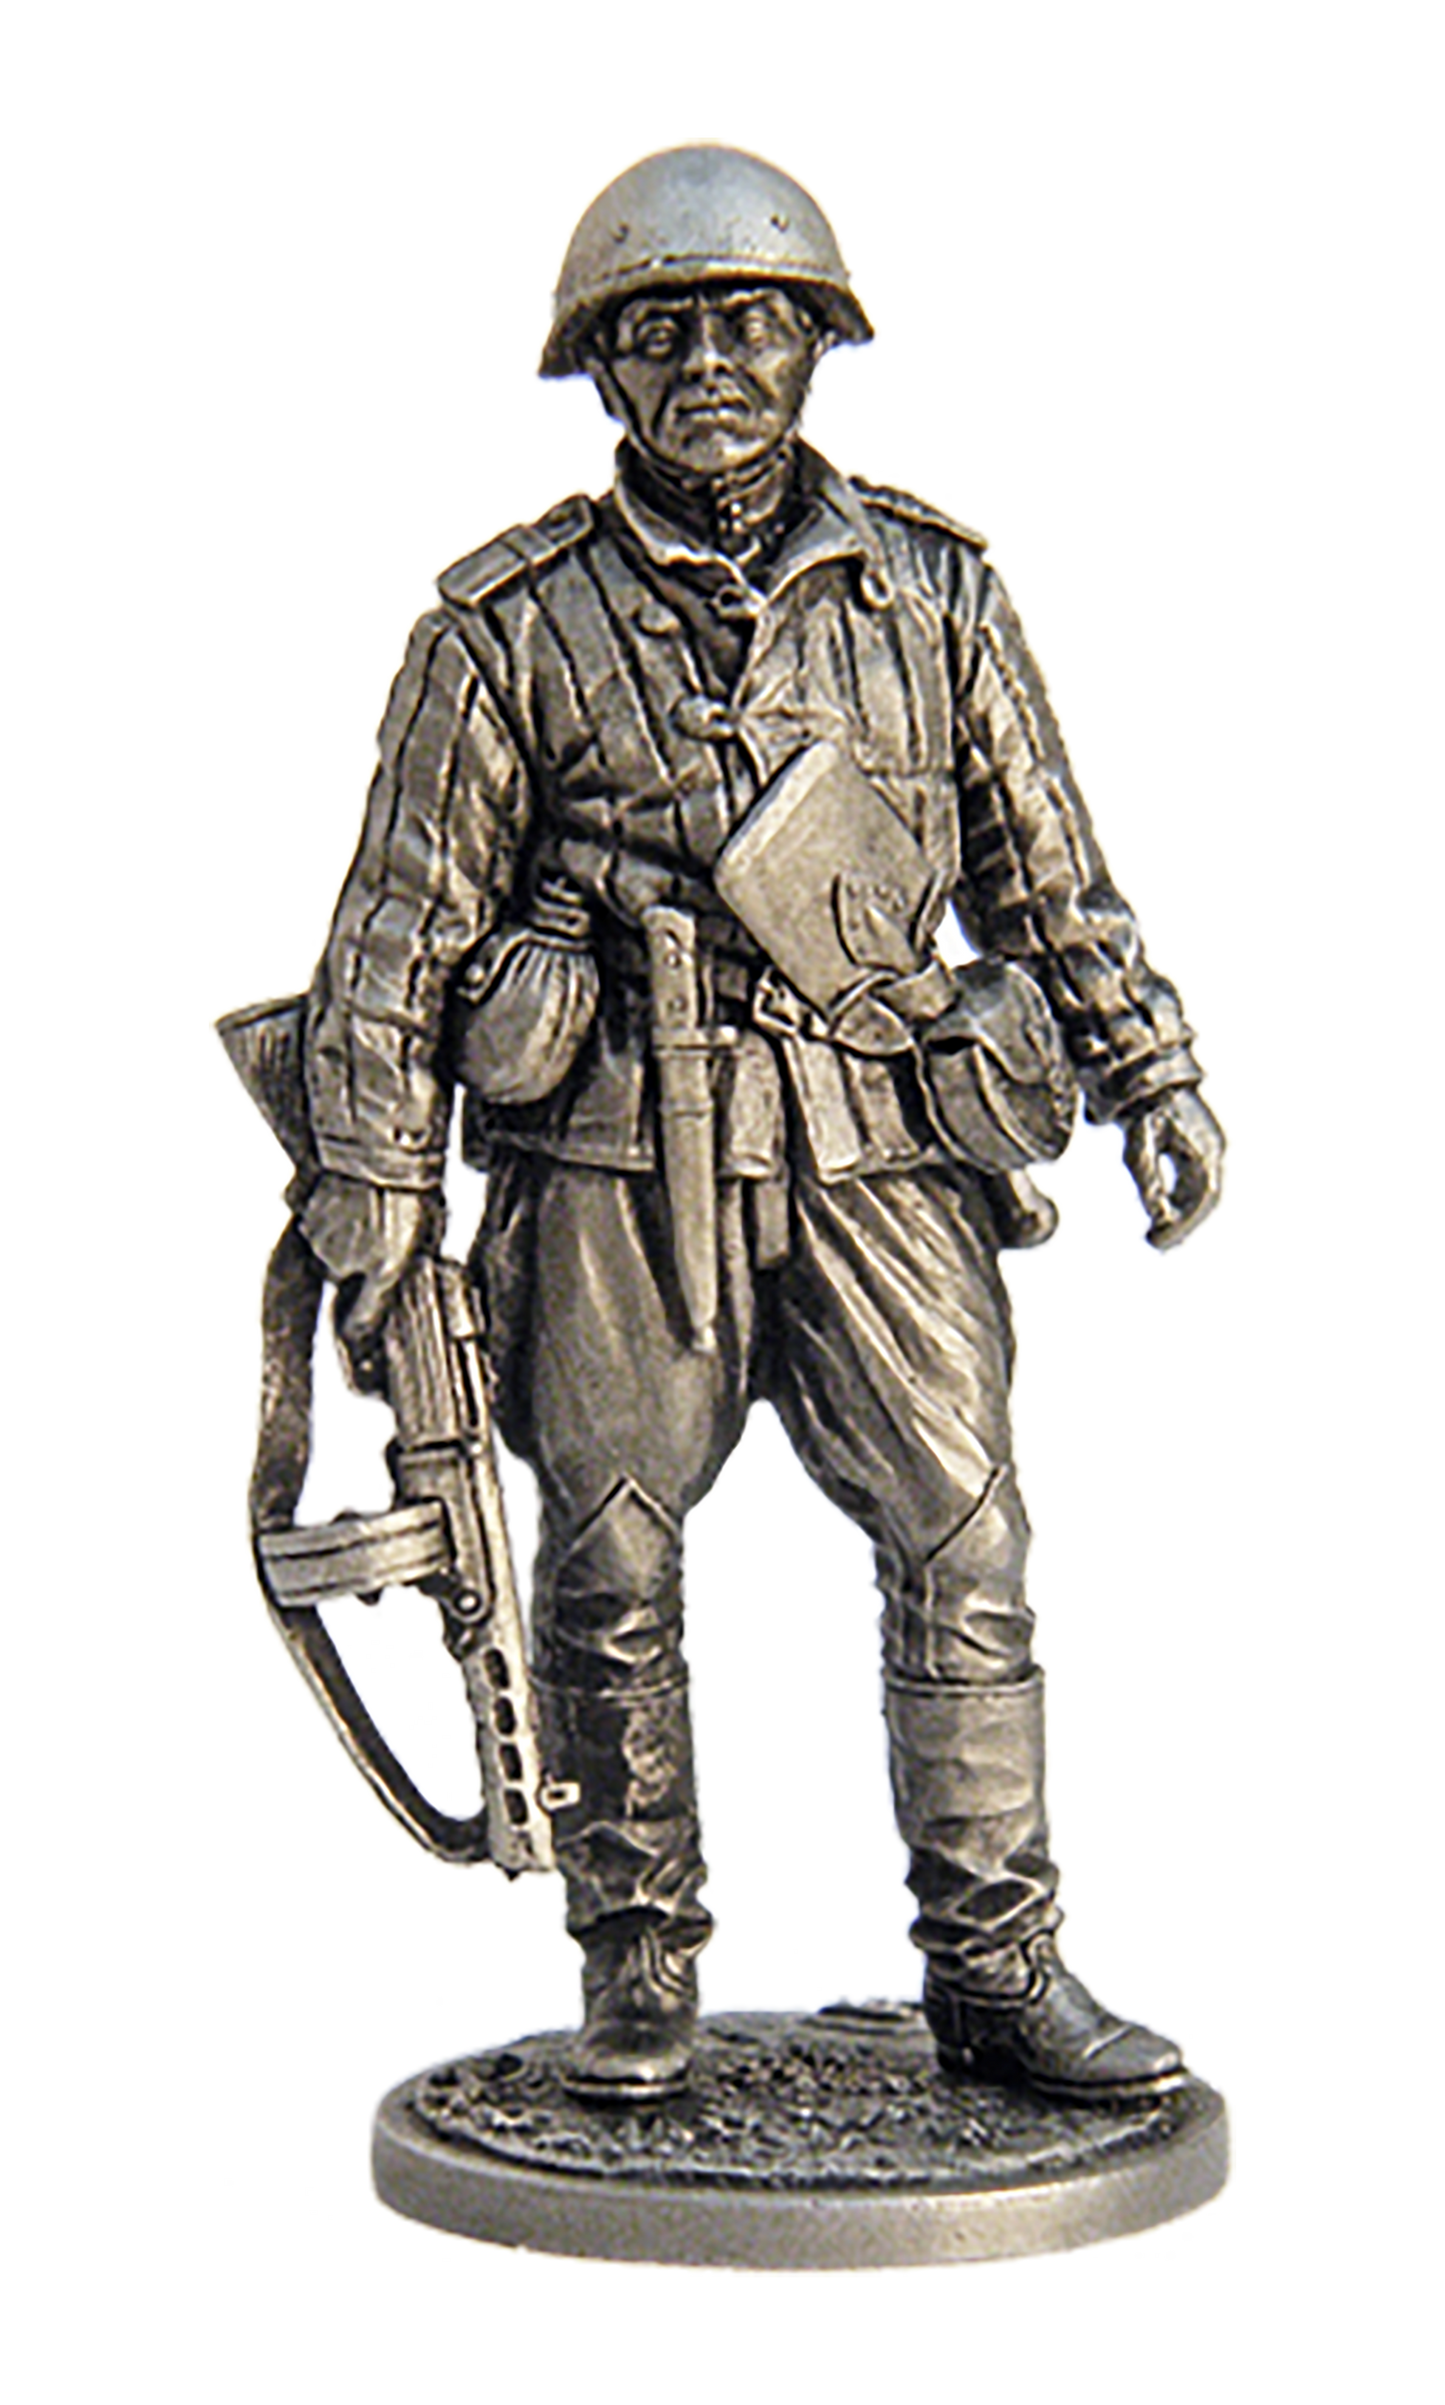 EK-WW2-1 - старший сержант пехоты Красной армии, 1943-45 гг. СССР